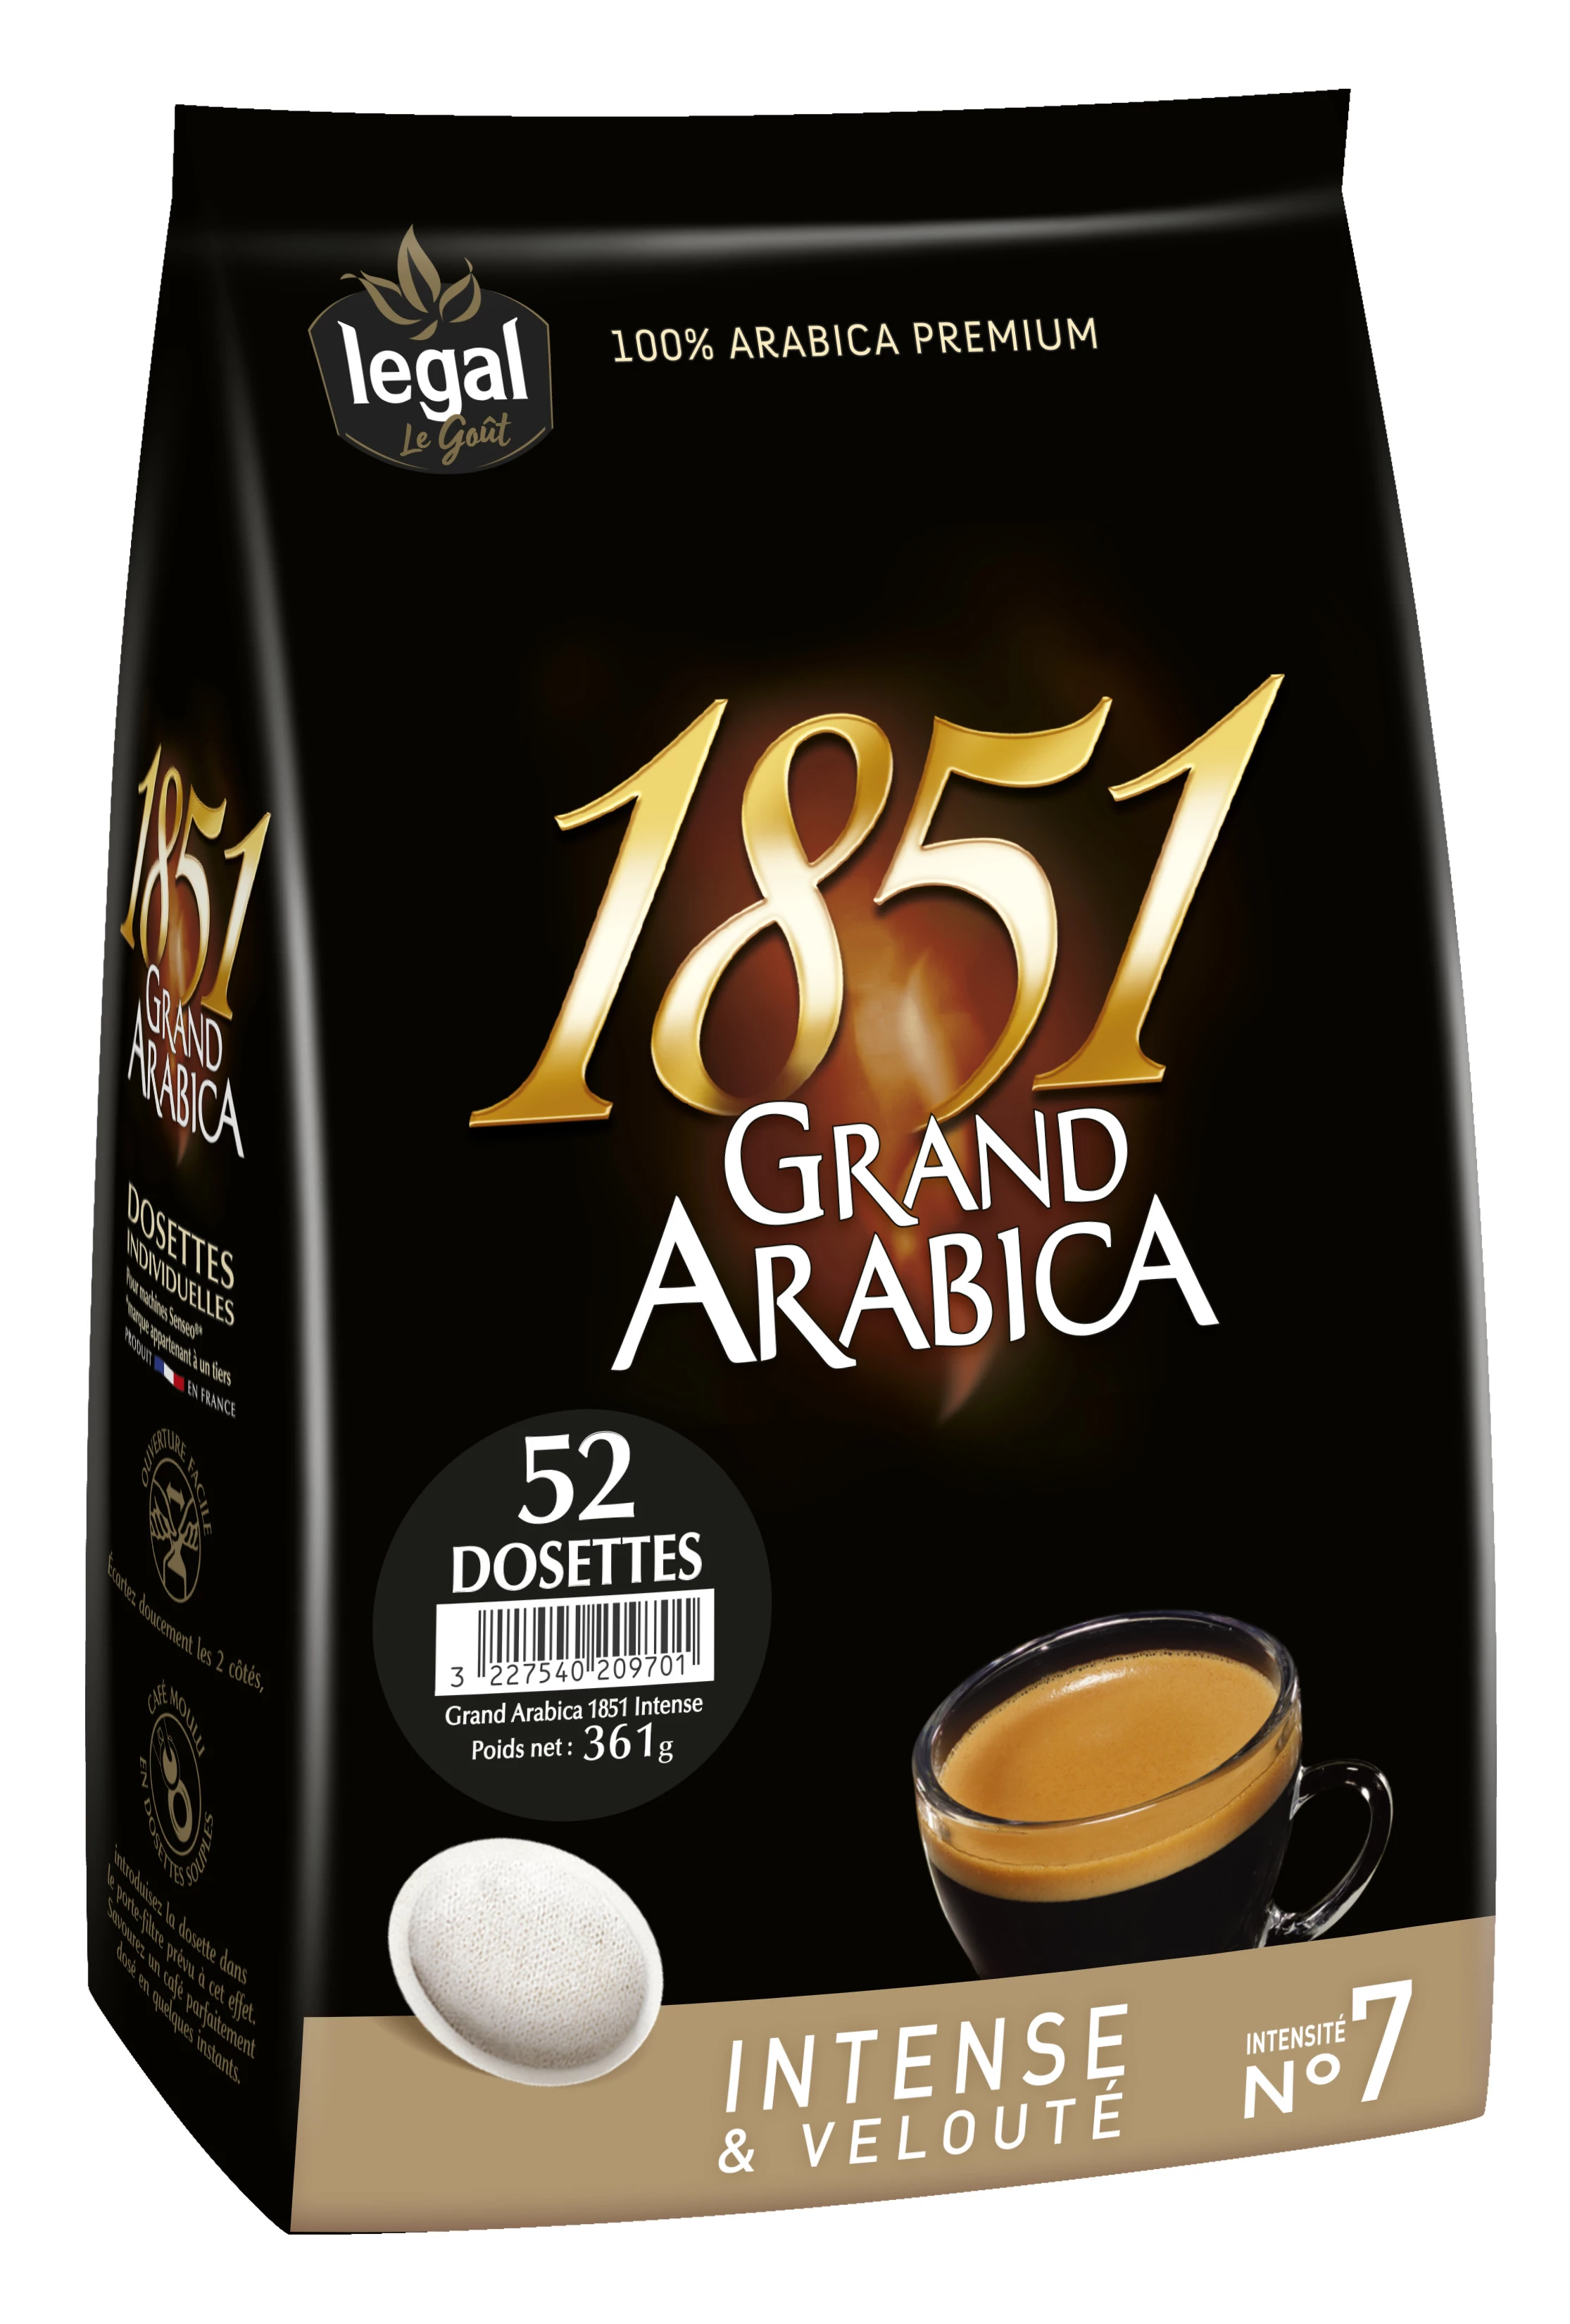 1851 Legal Gd Arab Intx52d 361